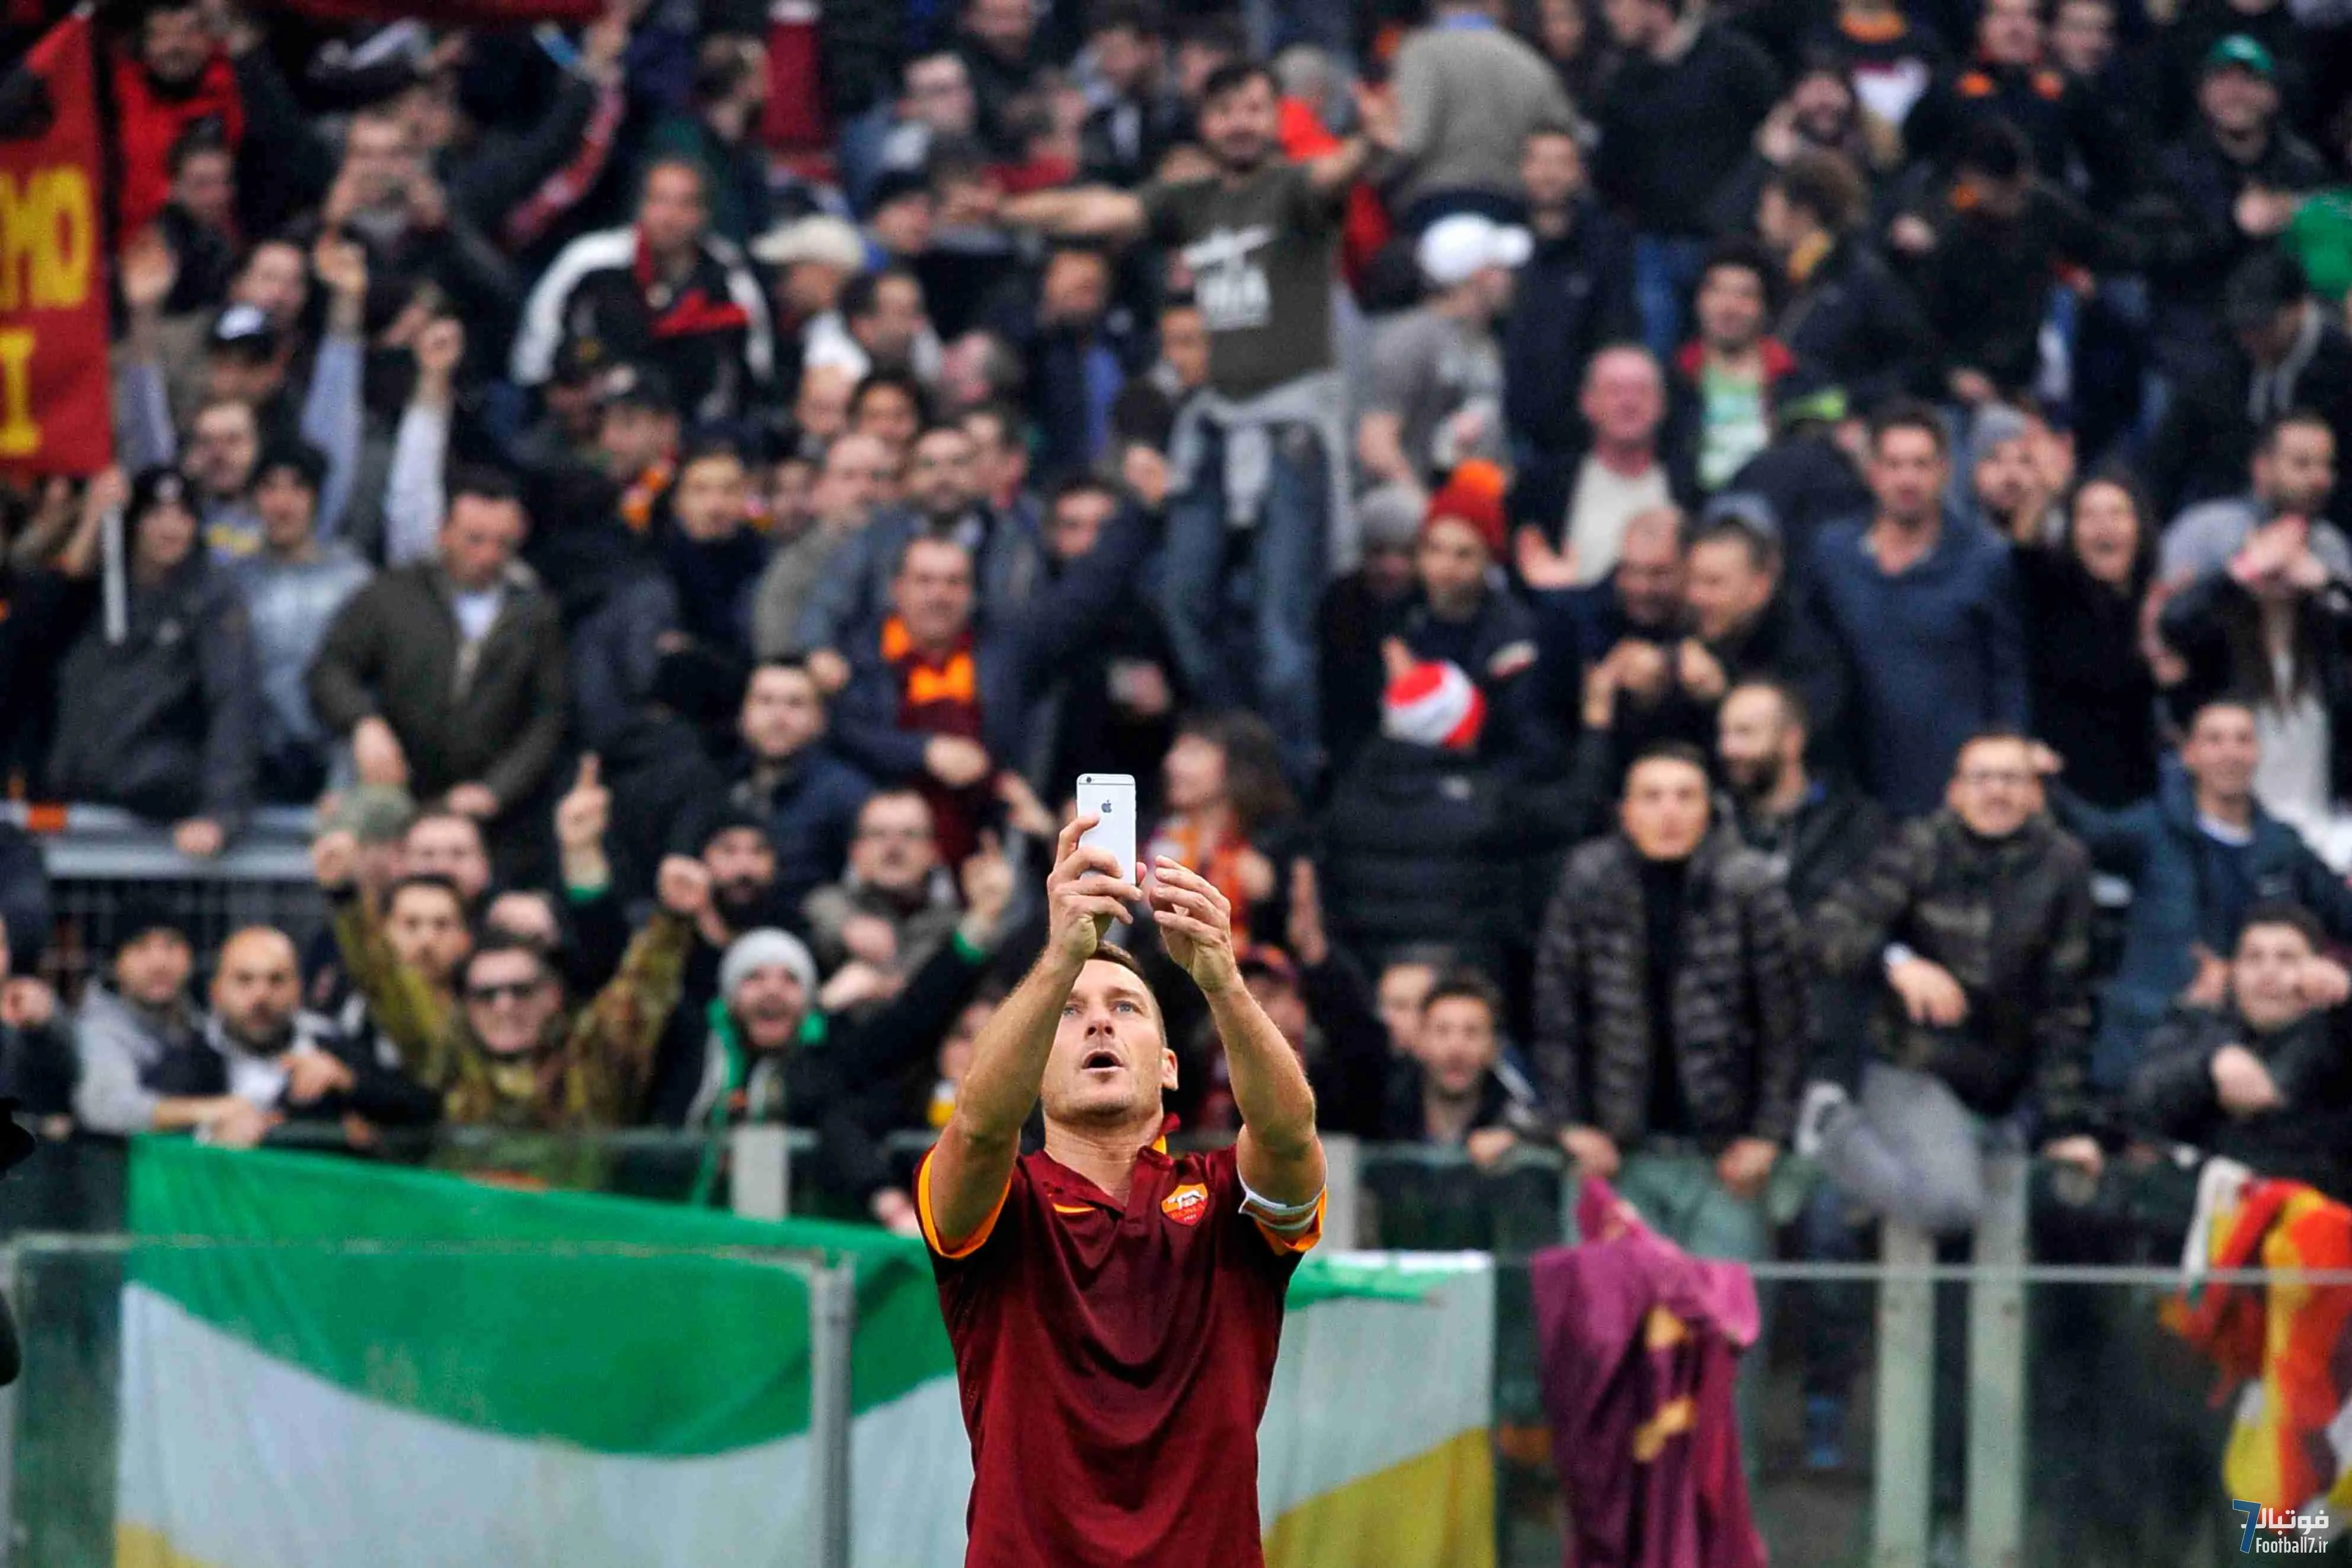 دلاکاپیتاله چگونه شکل گرفت؟ نگاهی به تاریخچه رقابت جذاب آاس رم و لاتزیو در فوتبال ایتالیا 